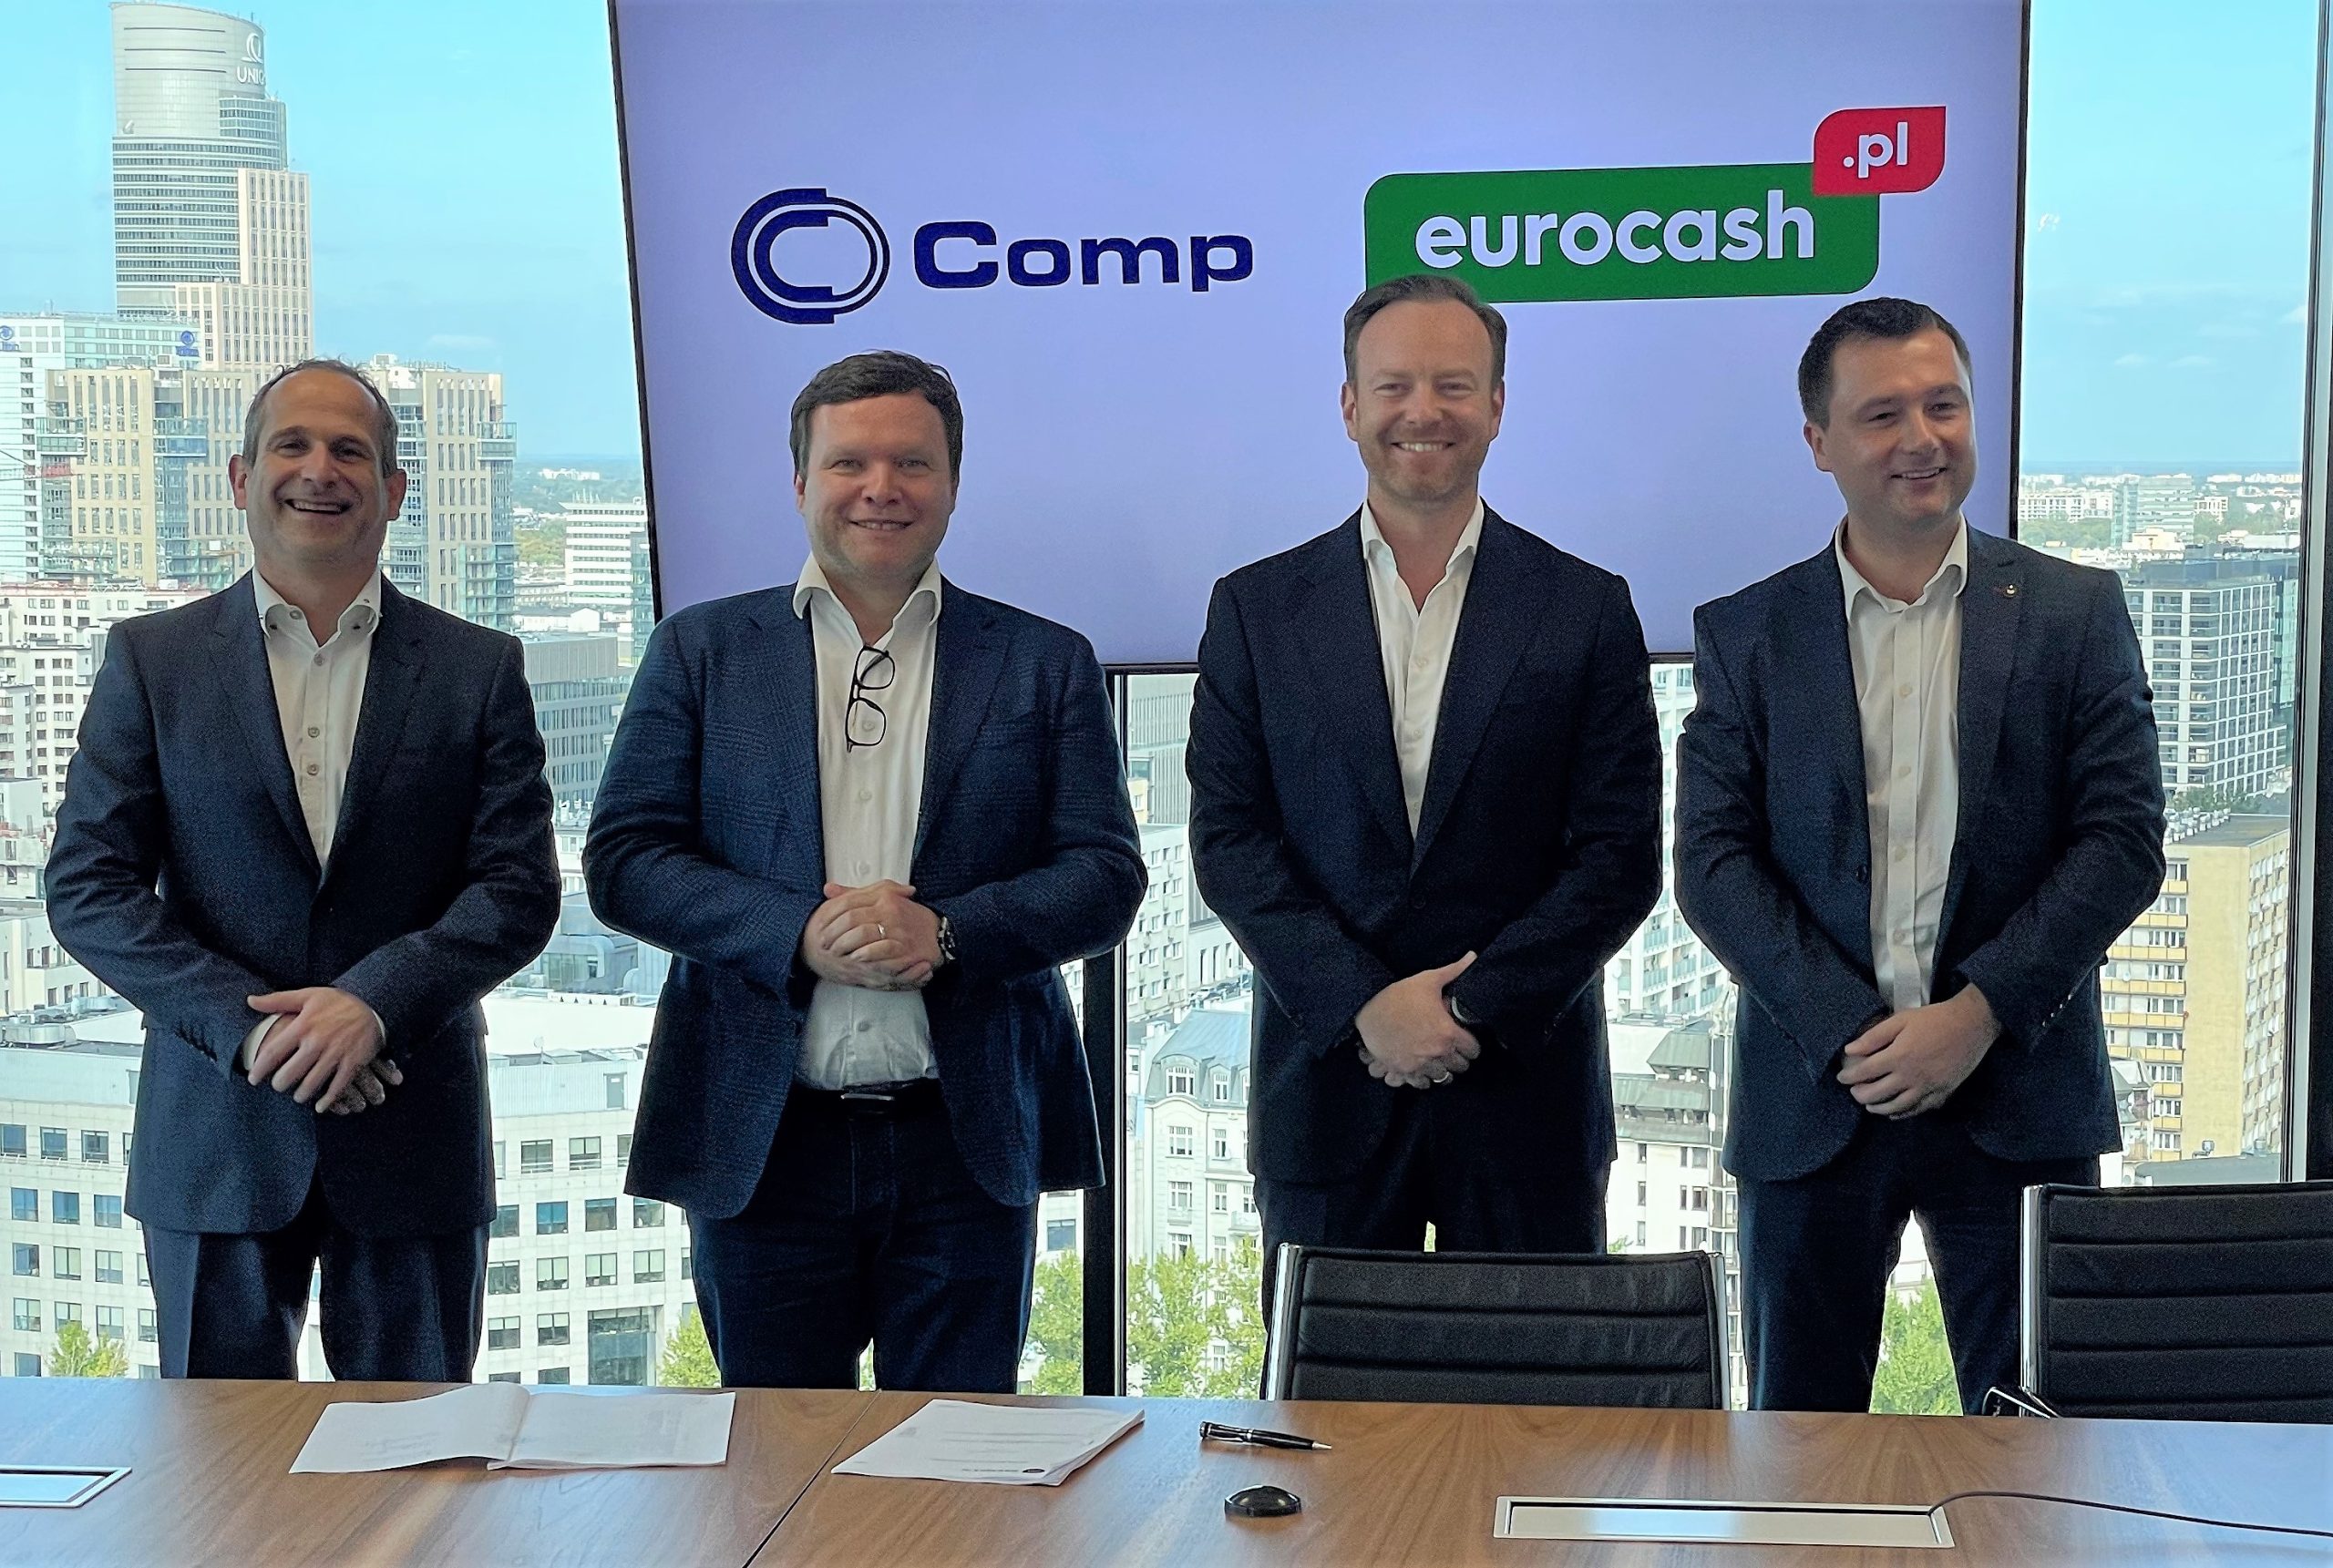 Grupa Comp z umową o współpracy strategicznej dla M/platform